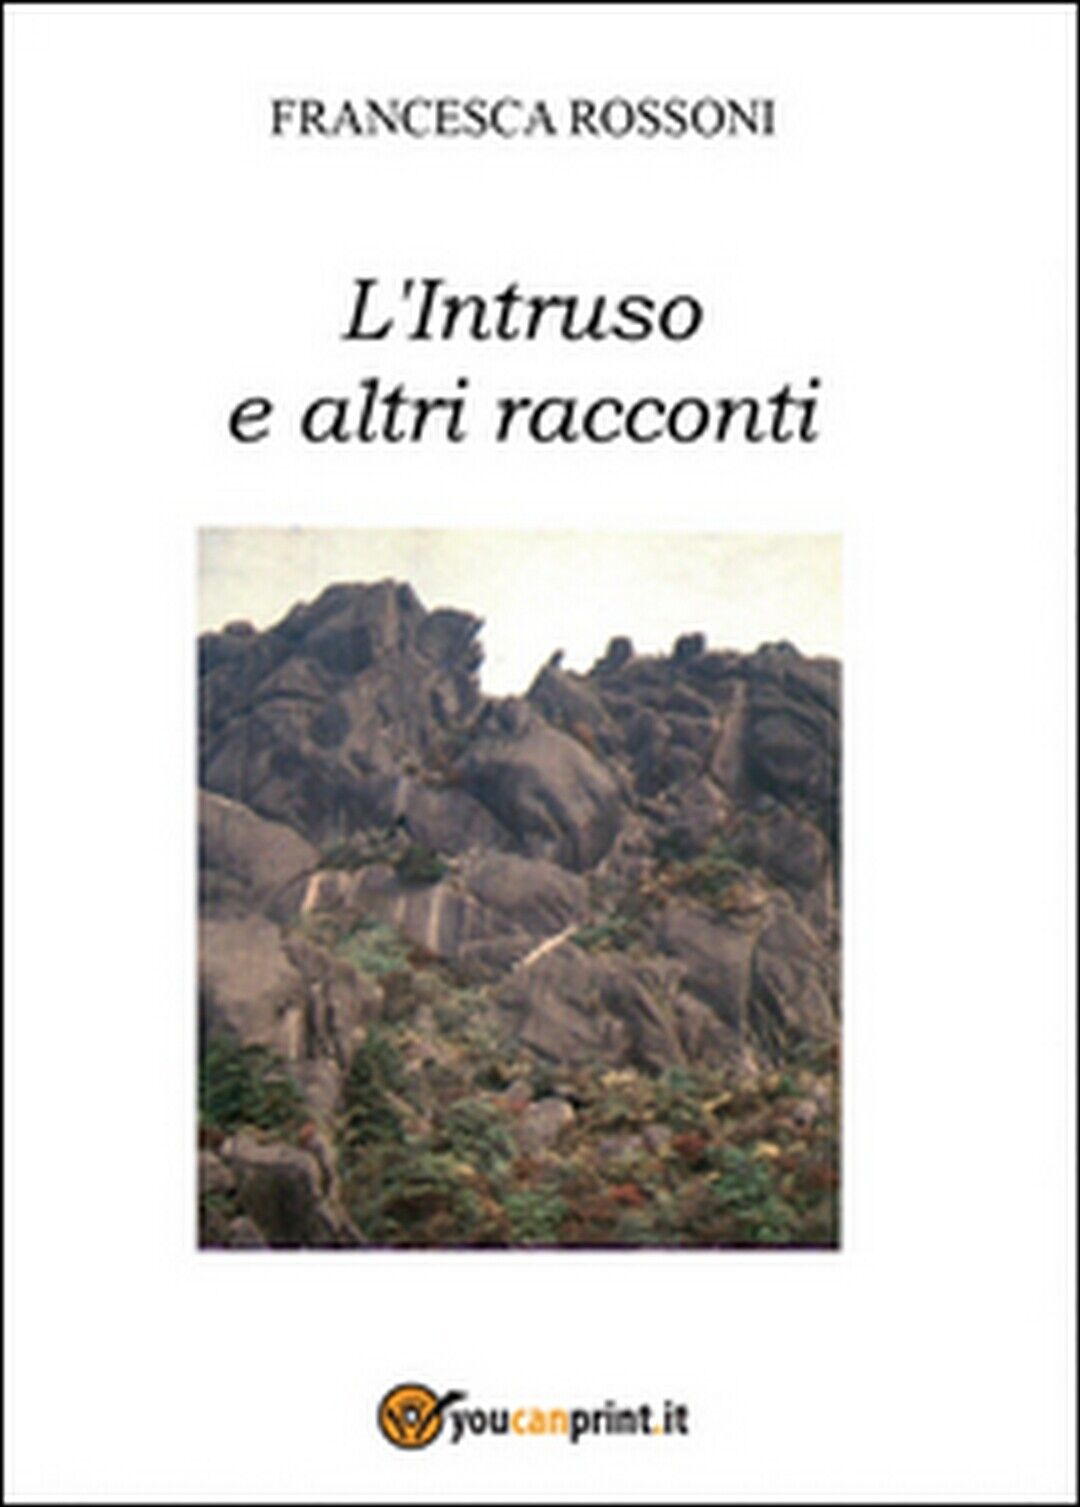 L'intruso e altri racconti  di Francesca Rossoni,  2014,  Youcanprint